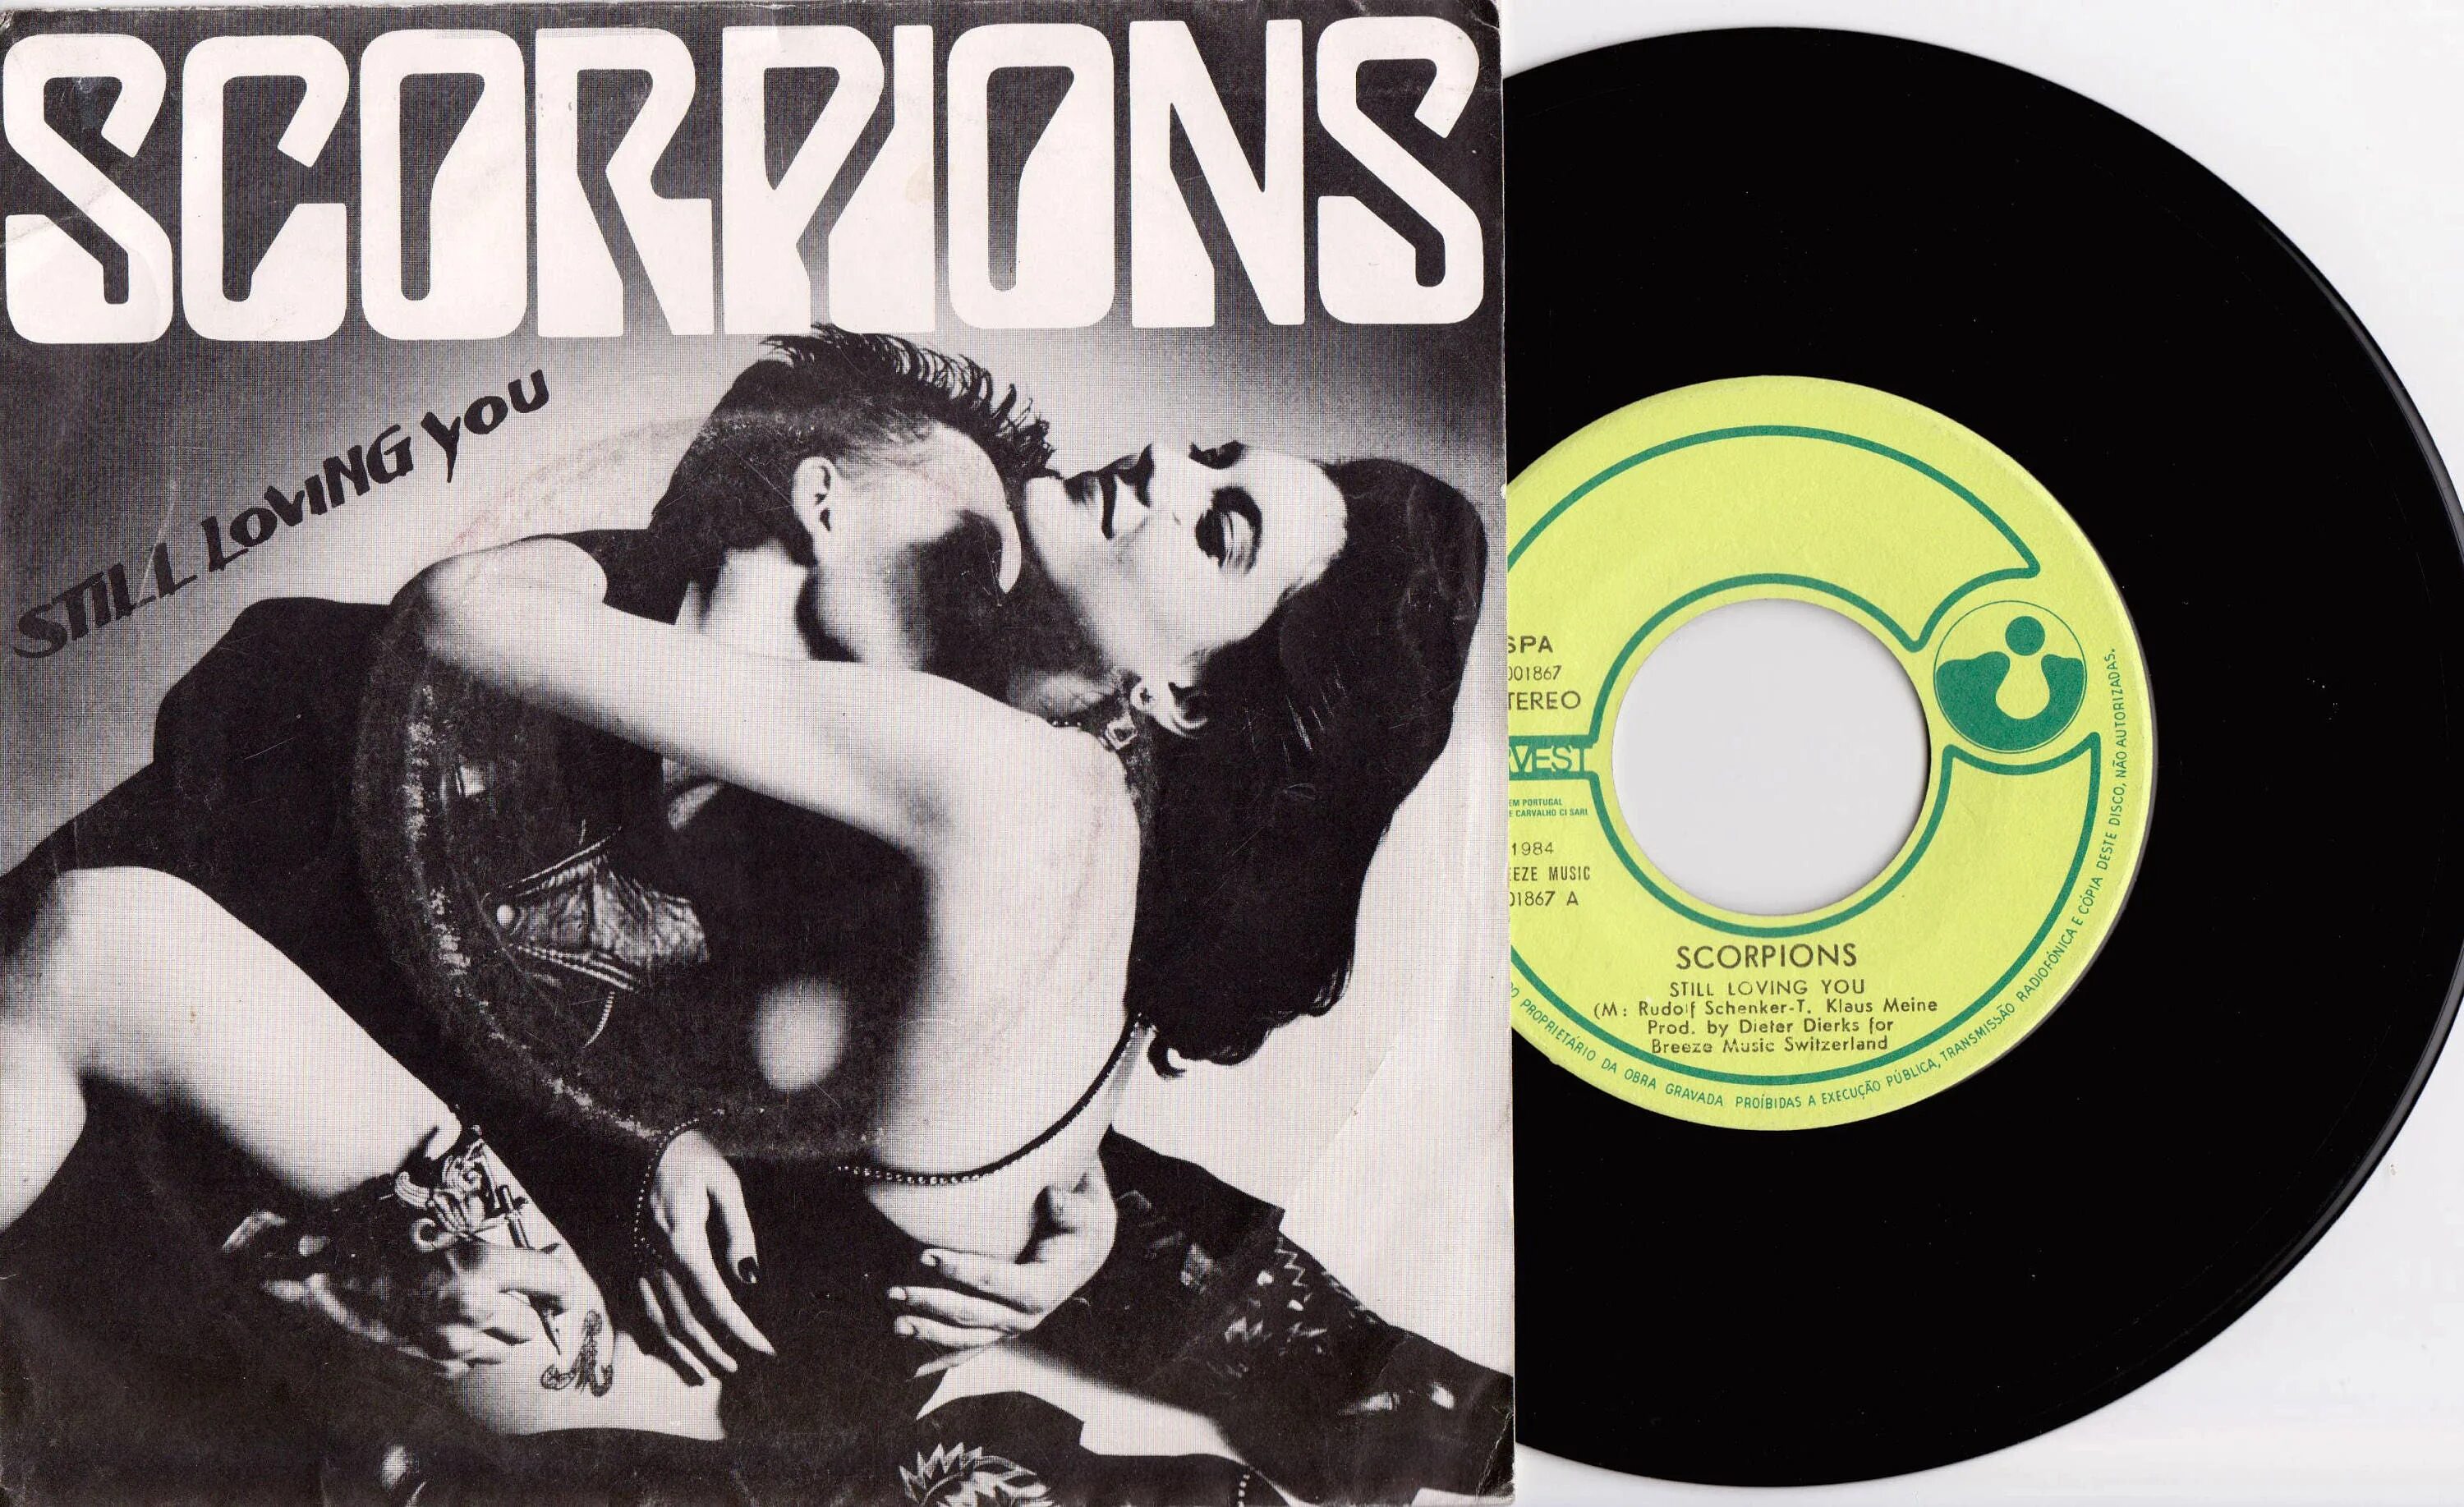 Скорпионс винил 1984. Скорпионс стил. Scorpions still loving you 1984. Scorpions 1984 Love at first Sting LP. Still love you scorpions текст